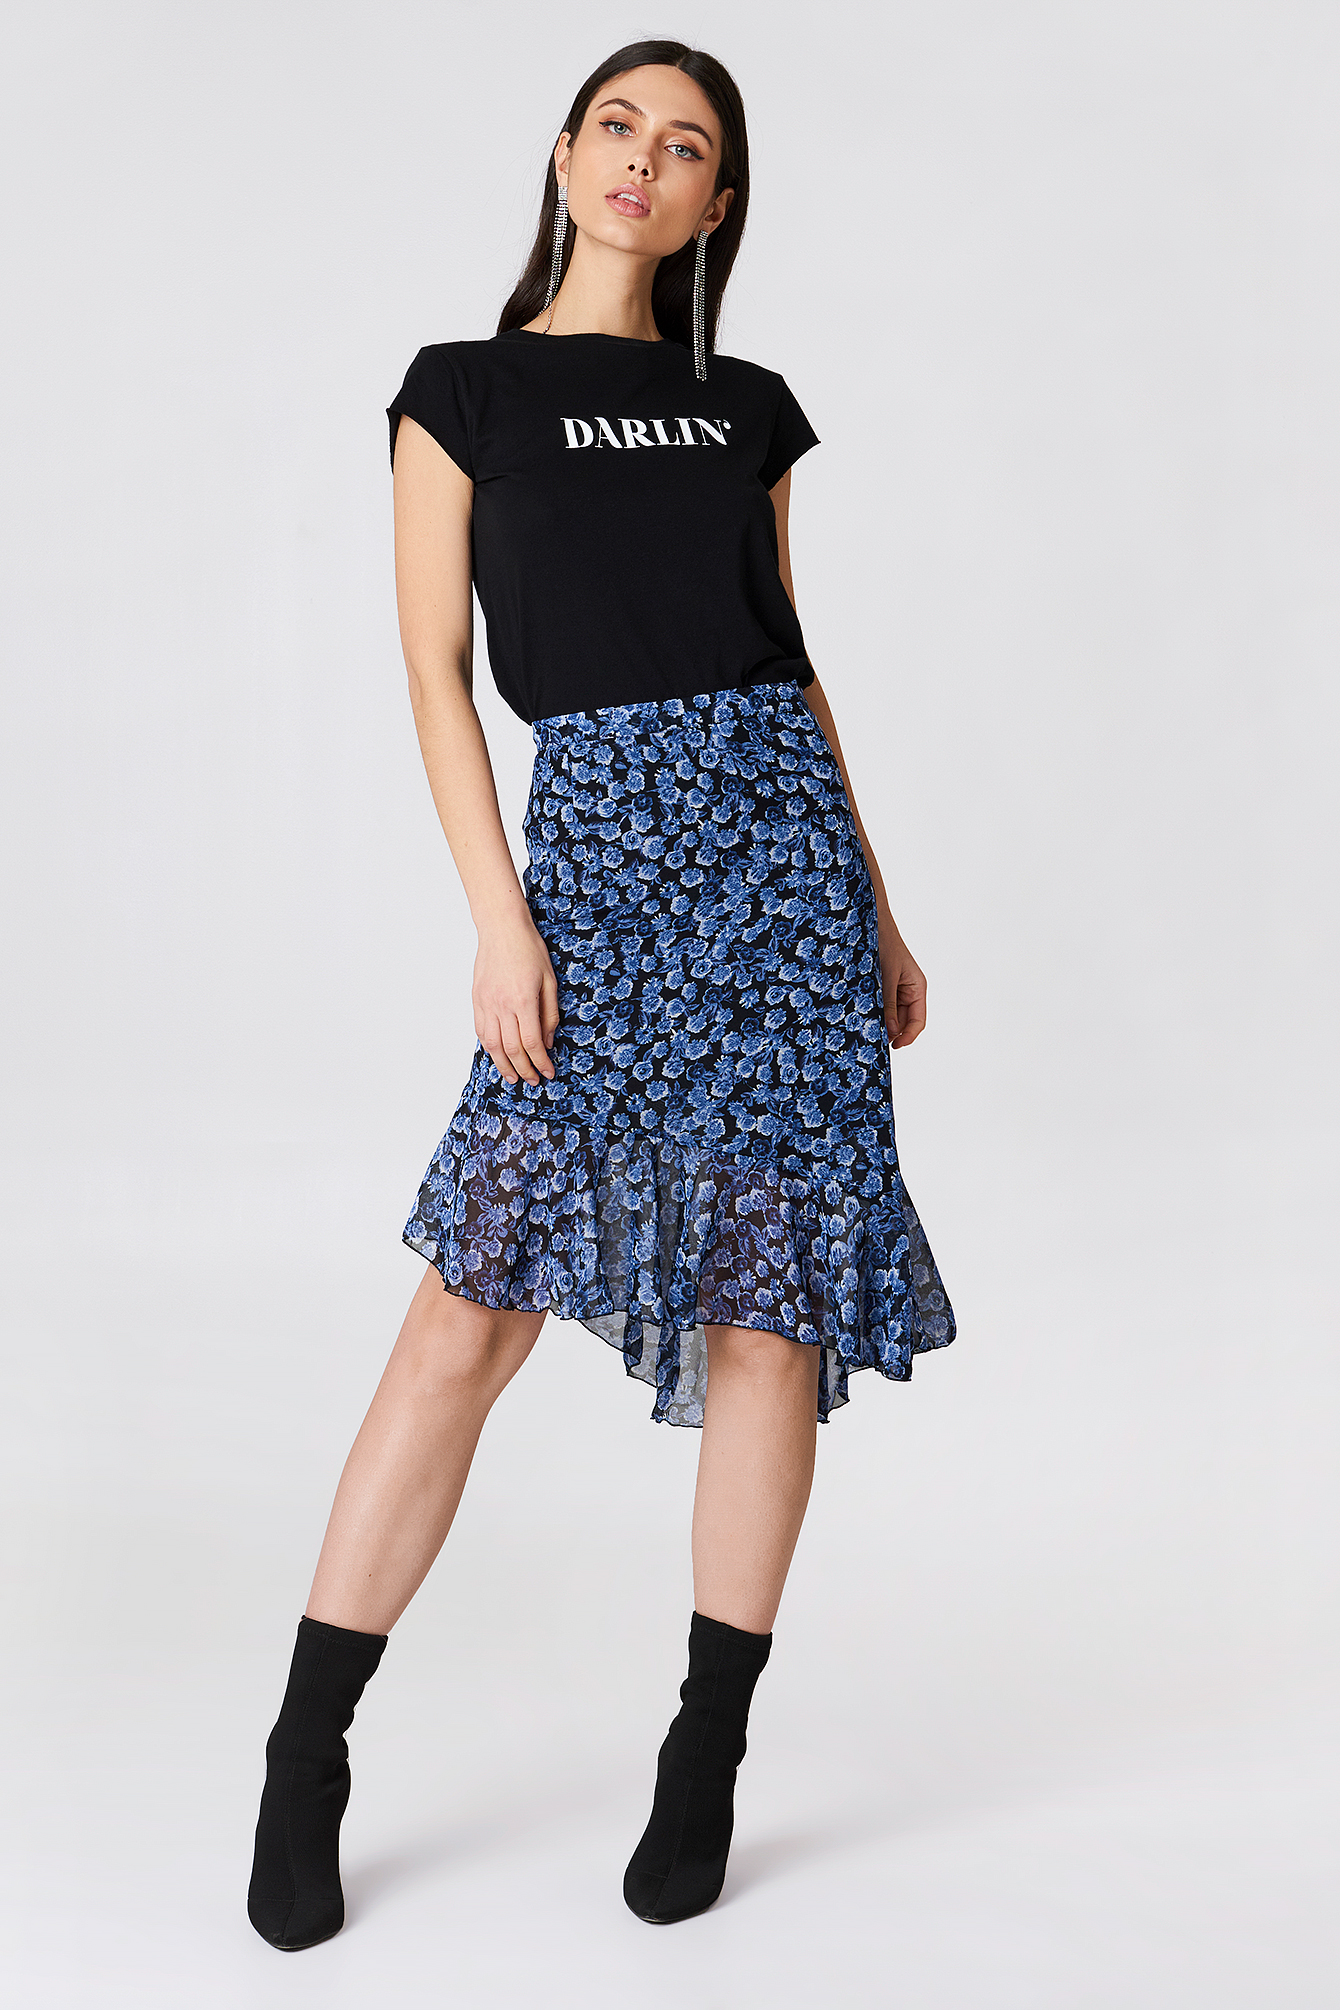 Small Blue Flowers NA-KD Asymmetric Ruffle Chiffon Skirt